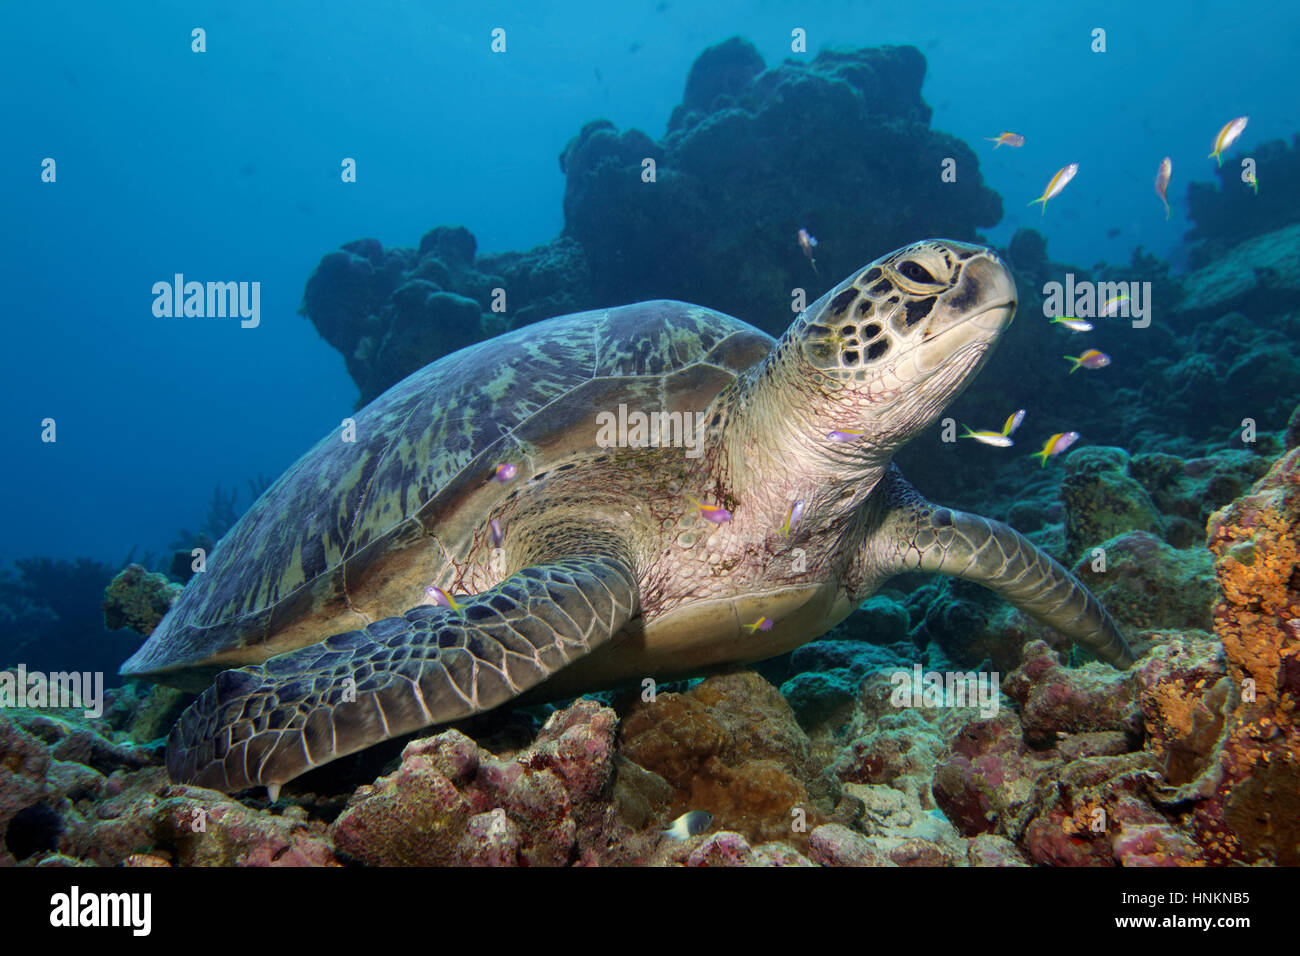 La tortuga verde (Chelonia mydas) sentado en arrecifes de coral, el Océano Índico, Maldivas Foto de stock